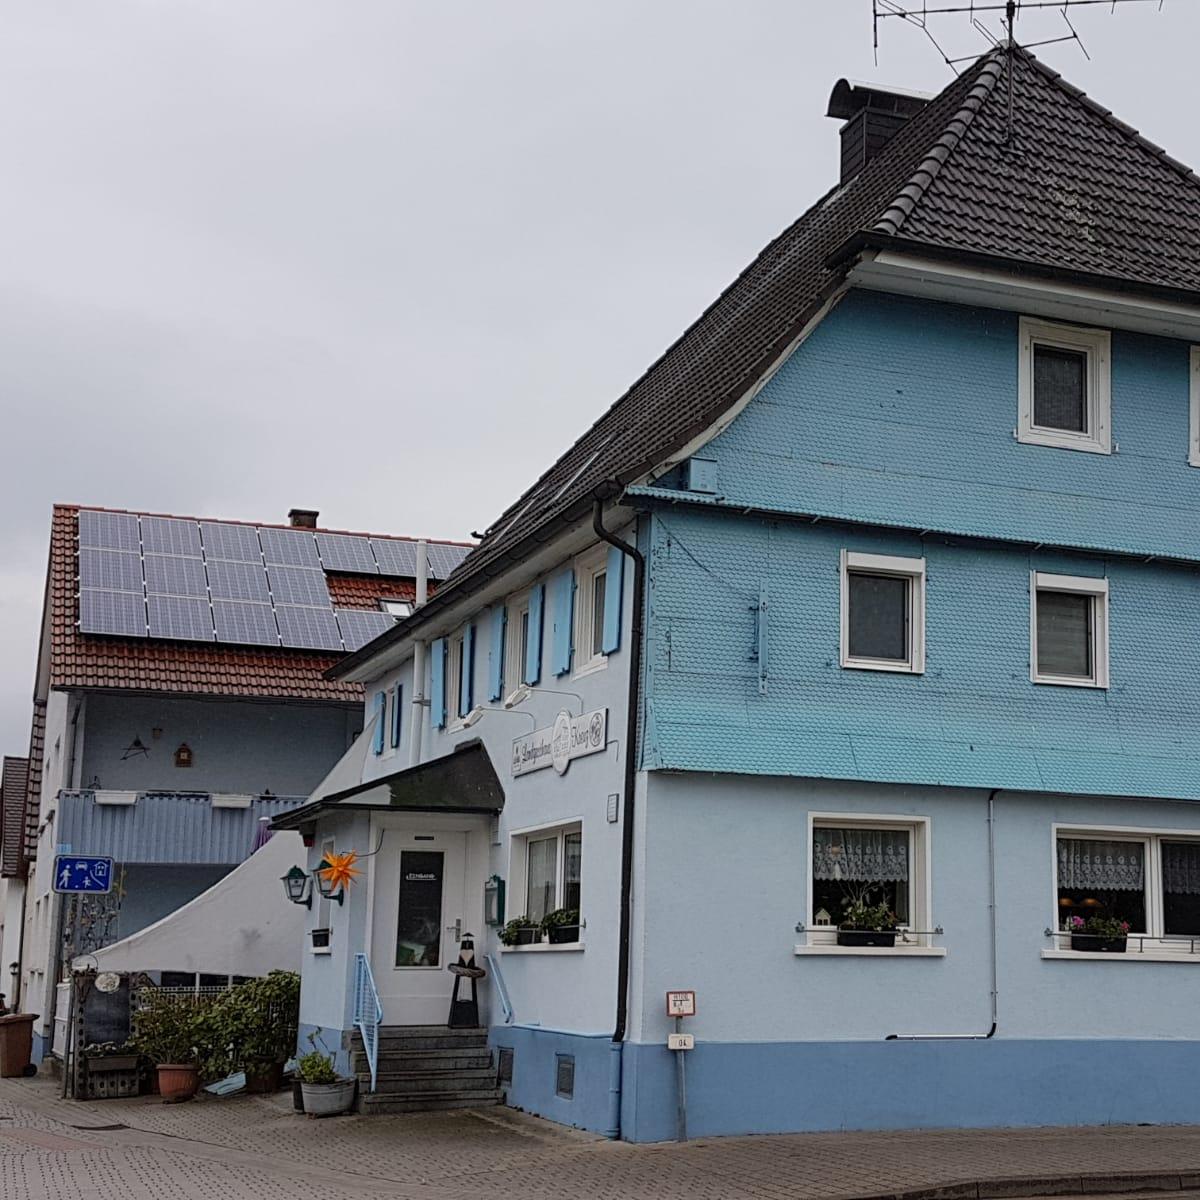 Restaurant "Landgasthaus Kreuz" in  Muggensturm